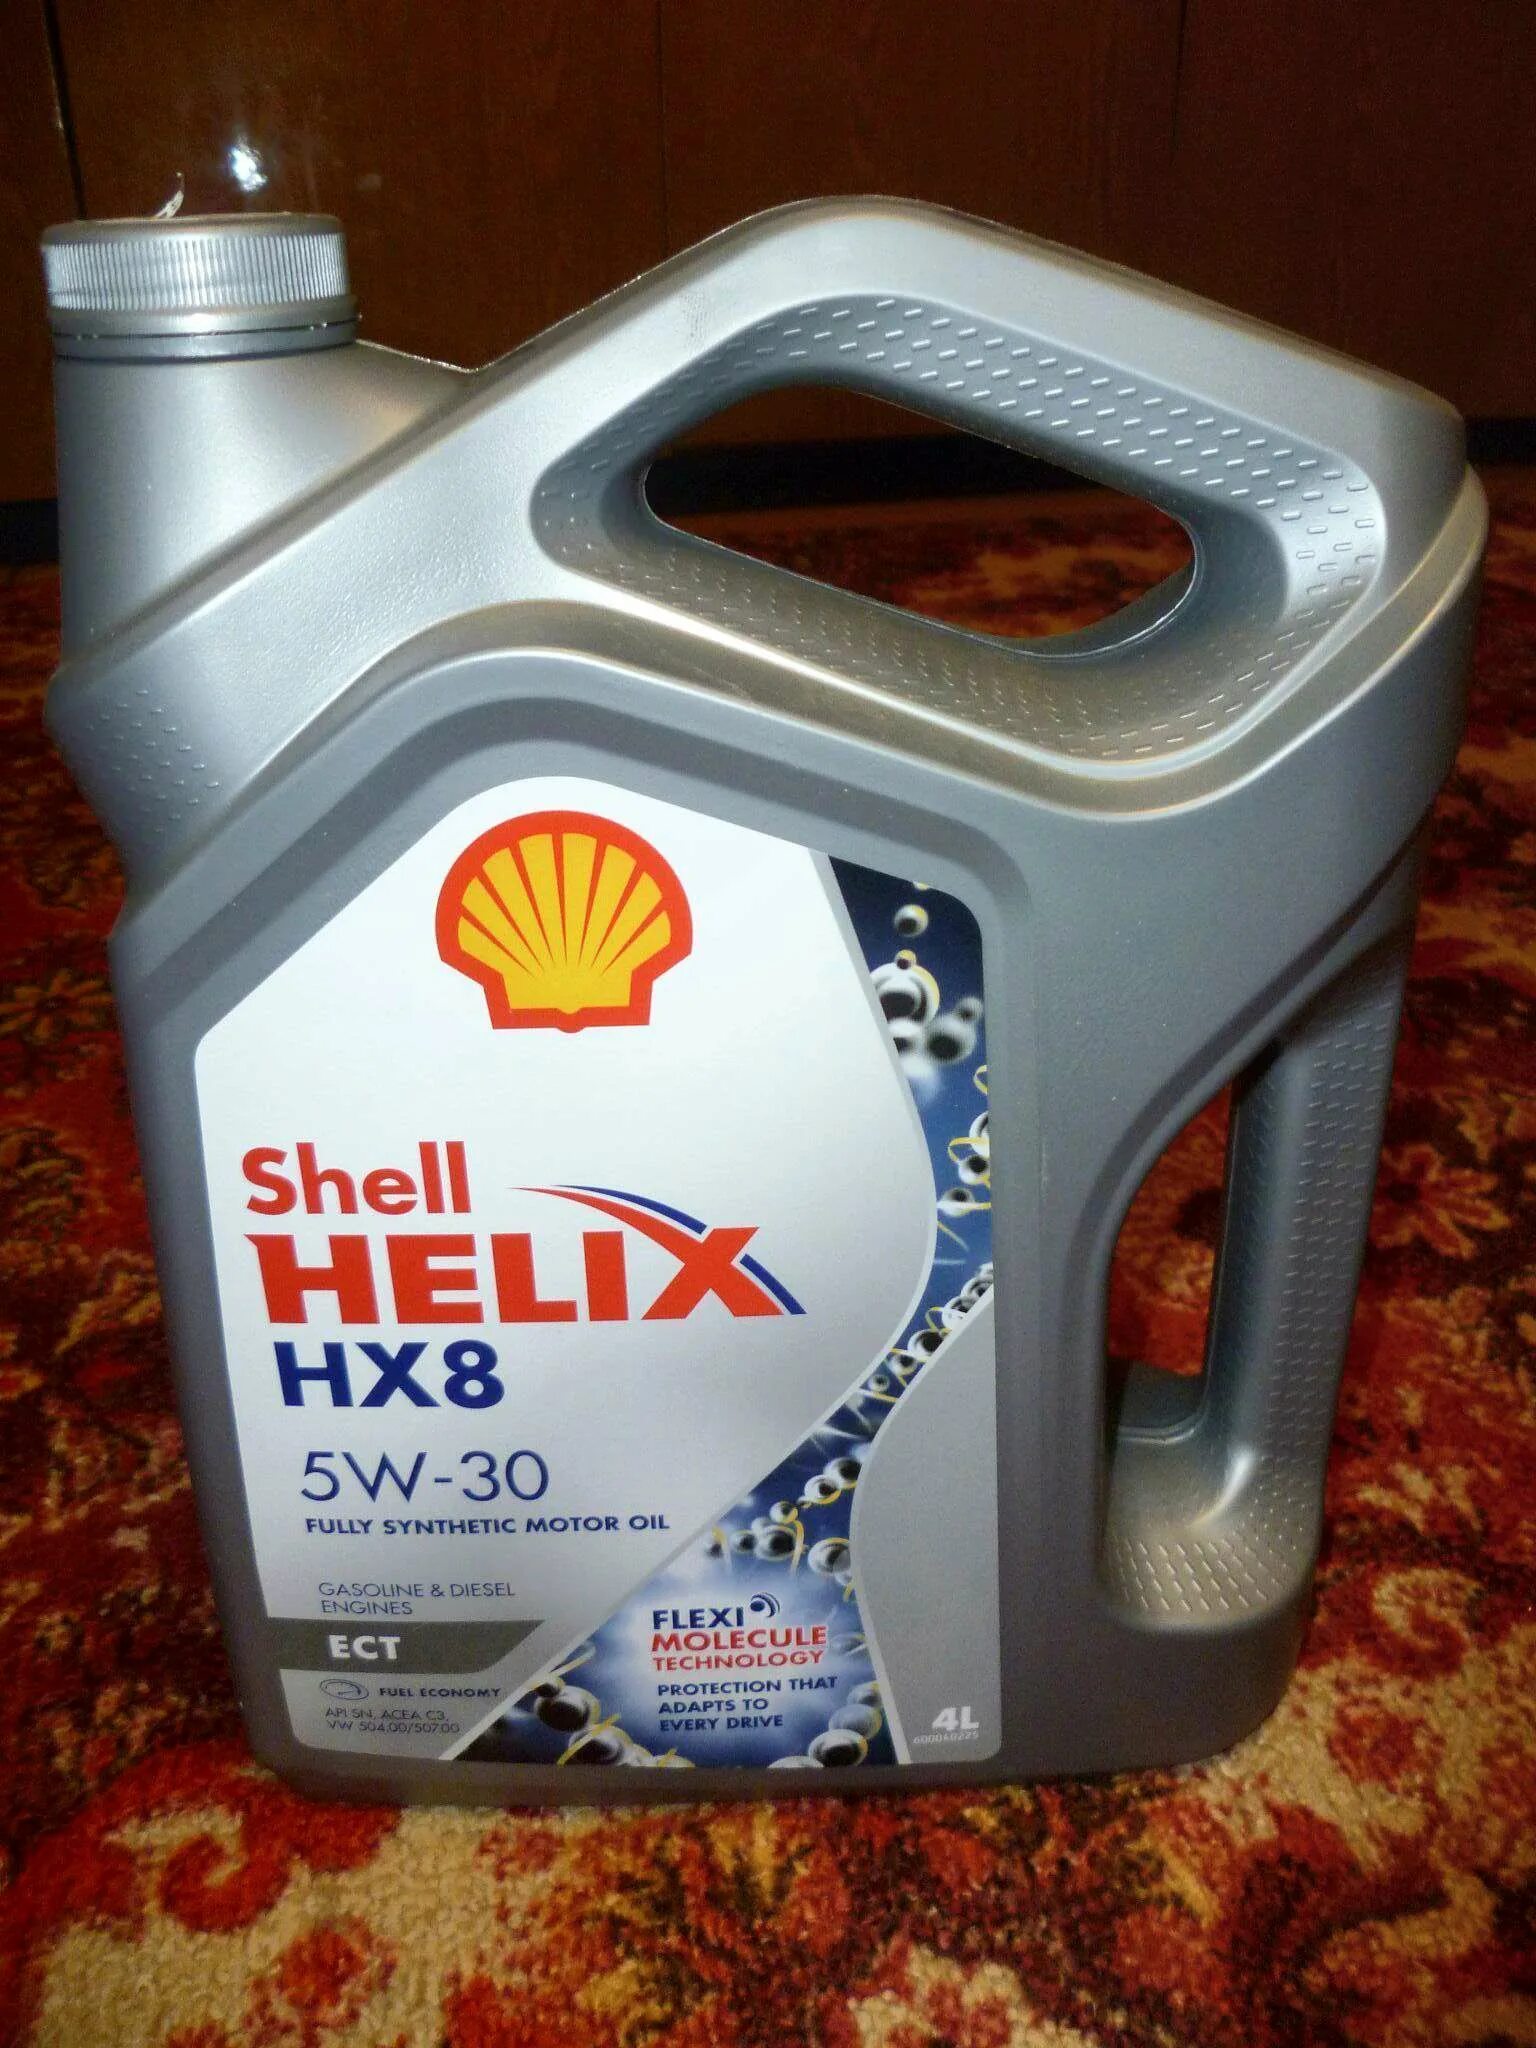 Shell hx8 5w30 ect. Hx8 ect 5w30. Helix hx8 ect 5w-30. Shell Helix hx8 ect 5w-30.